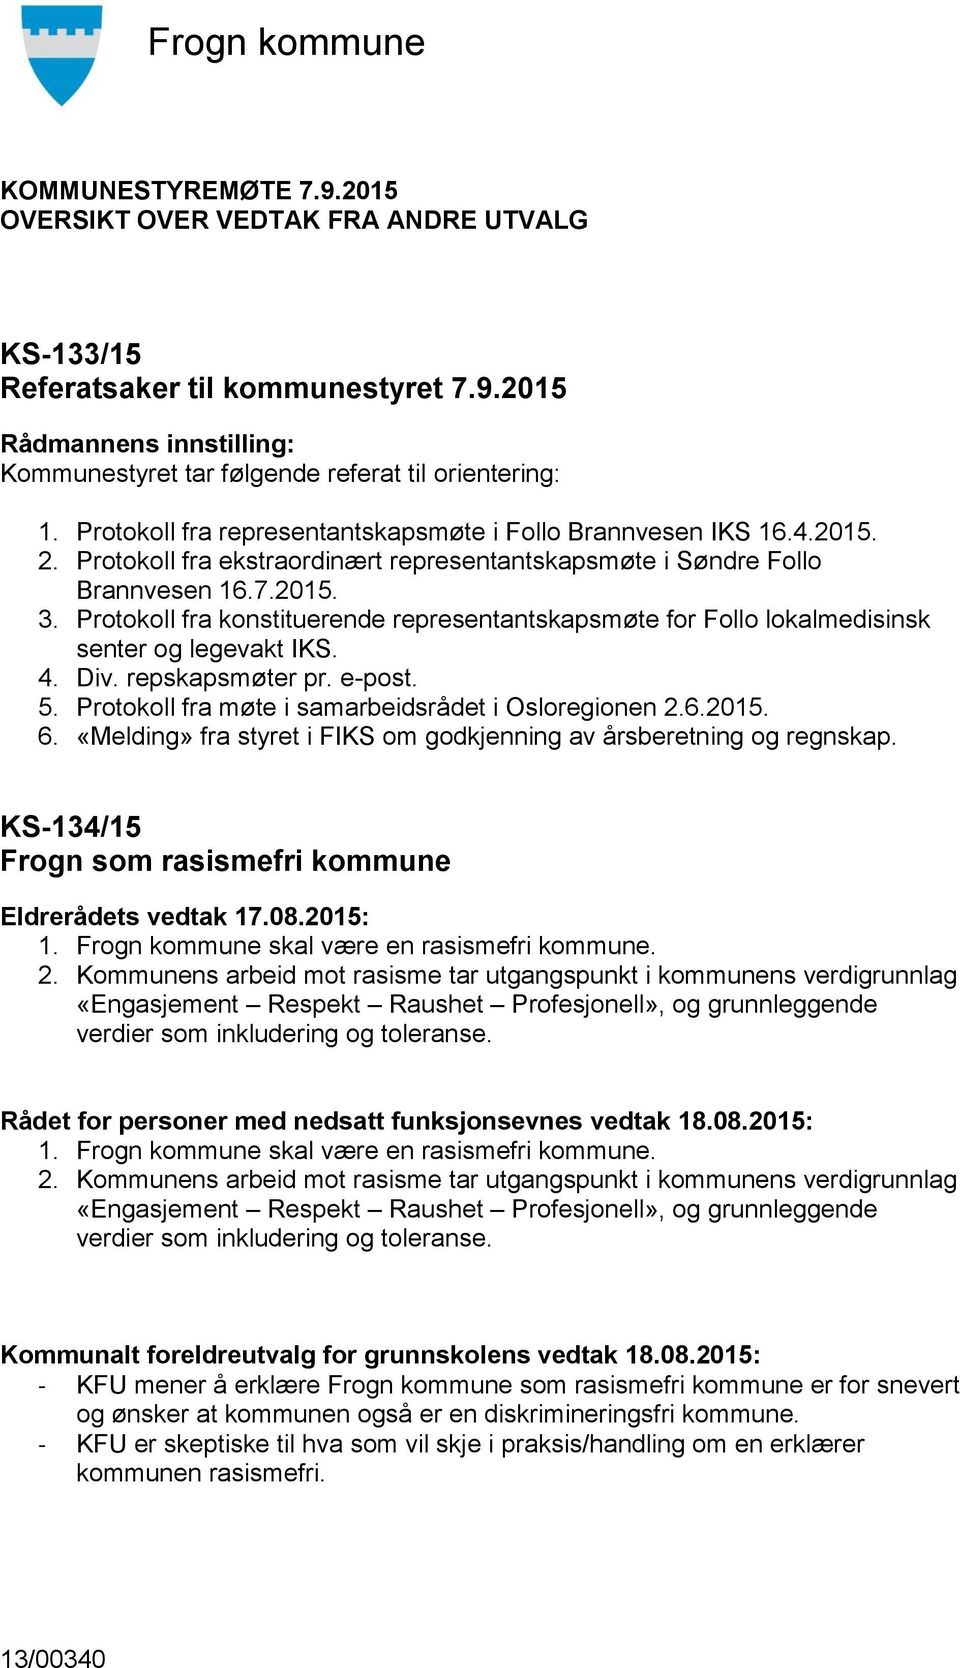 Protokoll fra konstituerende representantskapsmøte for Follo lokalmedisinsk senter og legevakt IKS. 4. Div. repskapsmøter pr. e-post. 5. Protokoll fra møte i samarbeidsrådet i Osloregionen 2.6.2015.